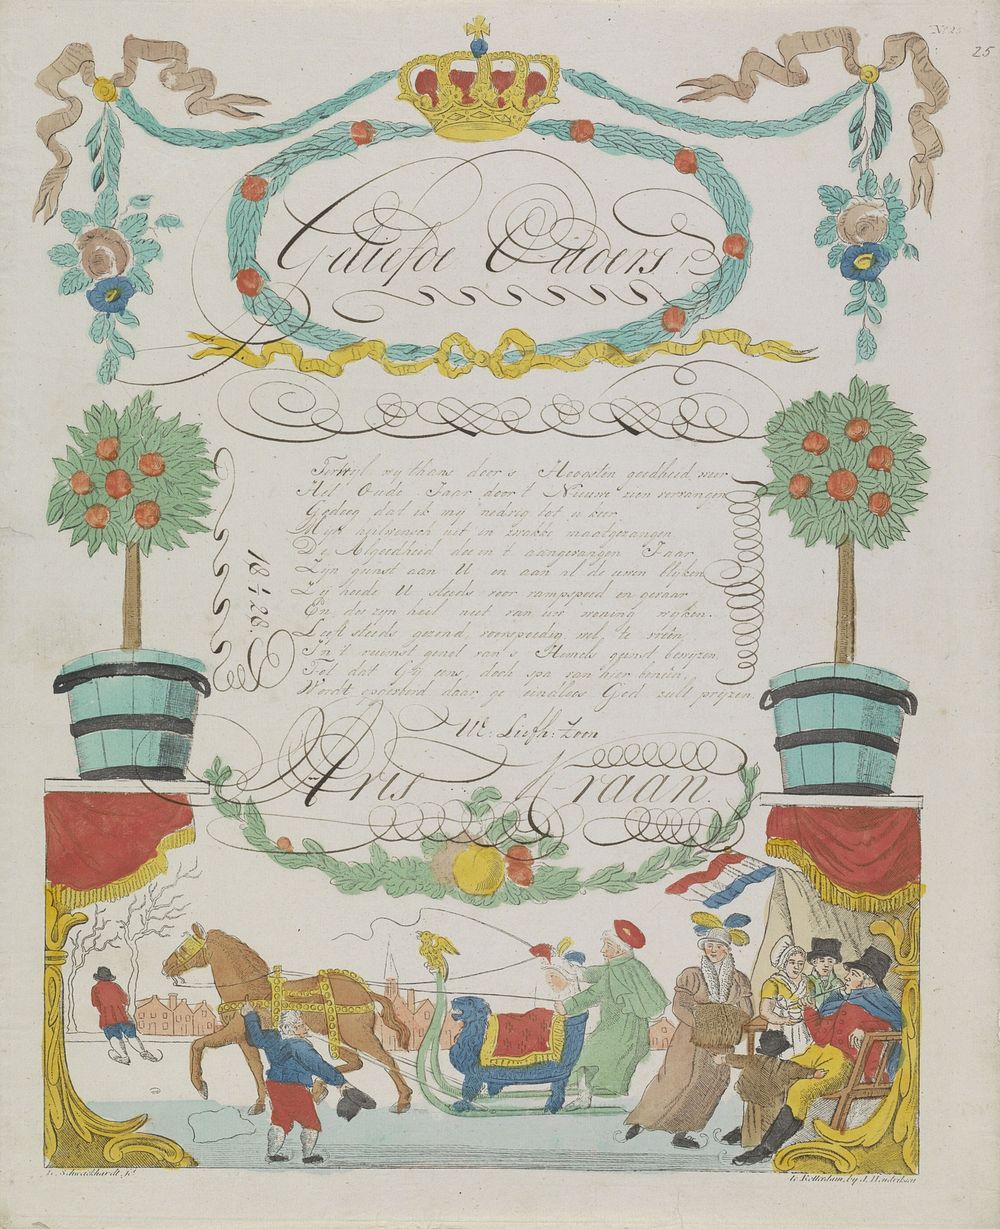 Wensbrief met winterse activiteiten (1828) by Leonardus Schweickhardt and Jan Hendriksen